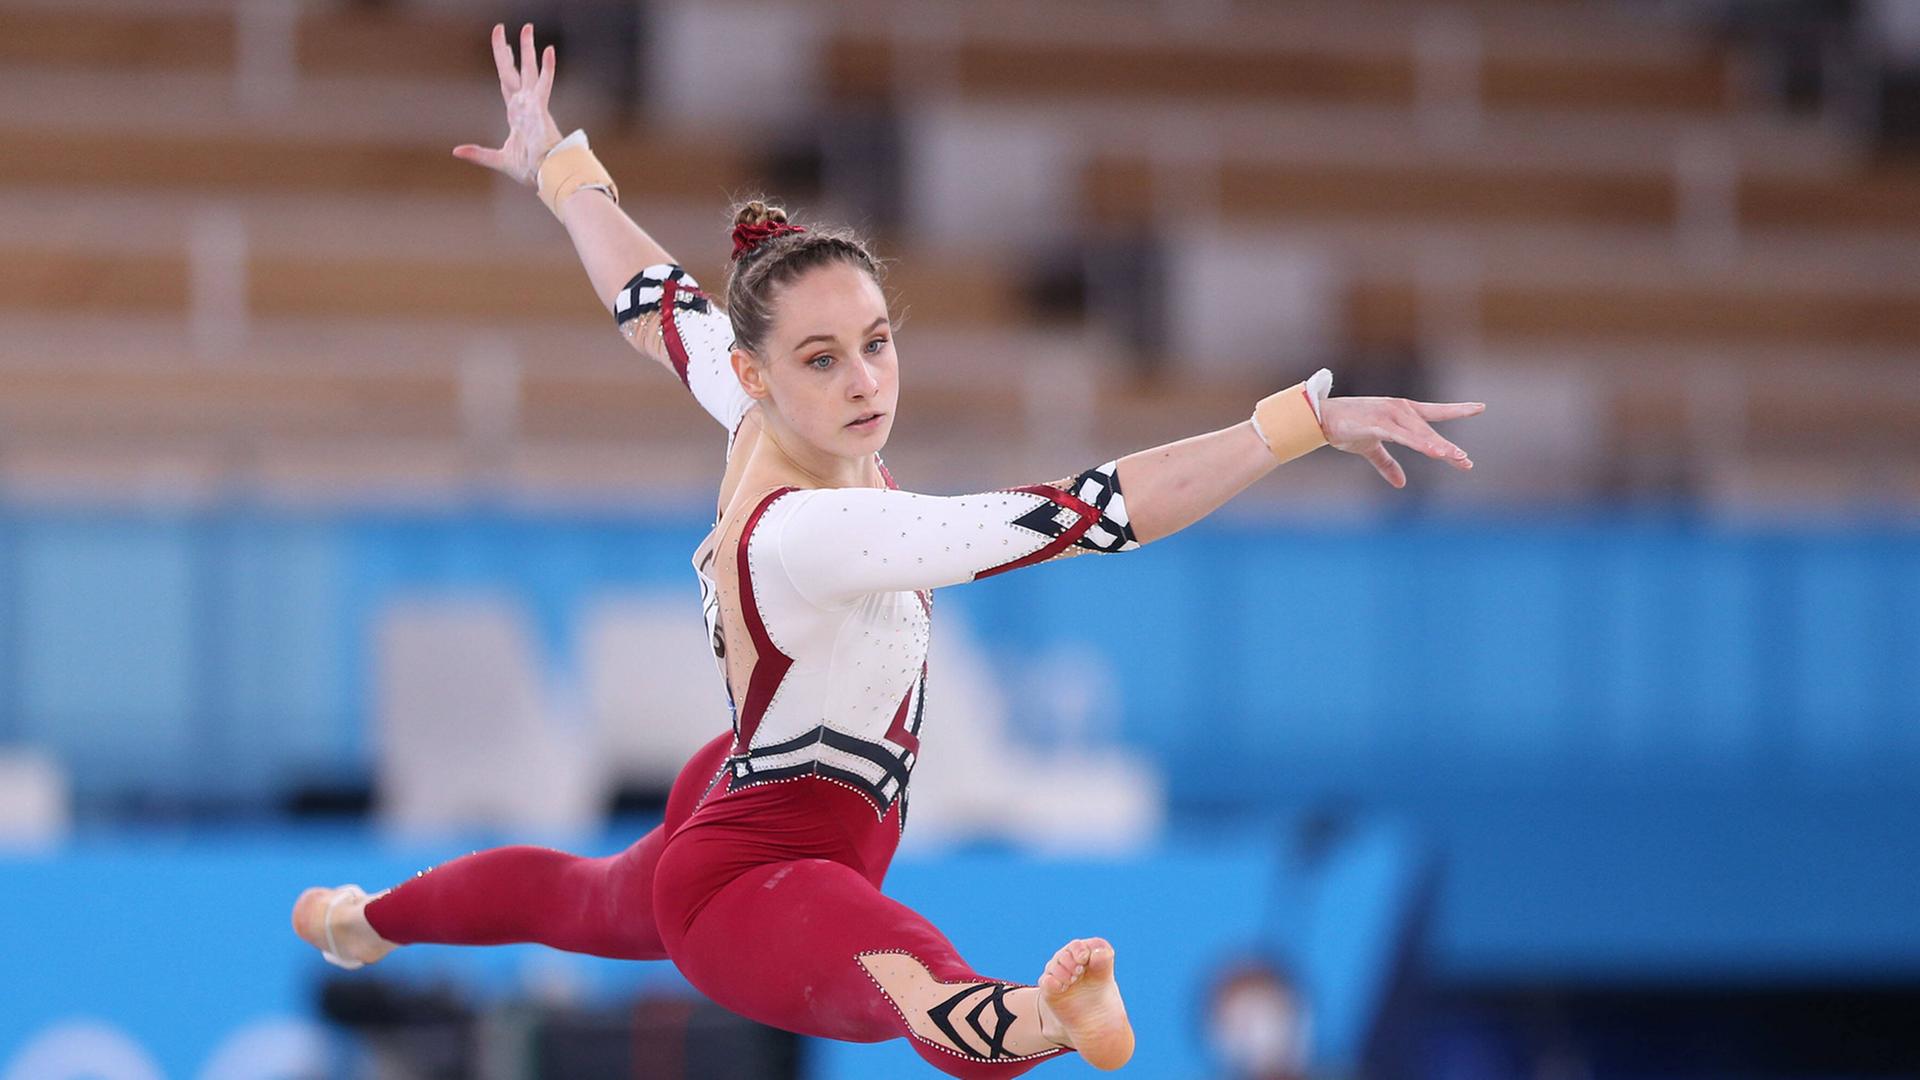 Sarah Voss bei den Olympischen Spielen im langen Turnanzug